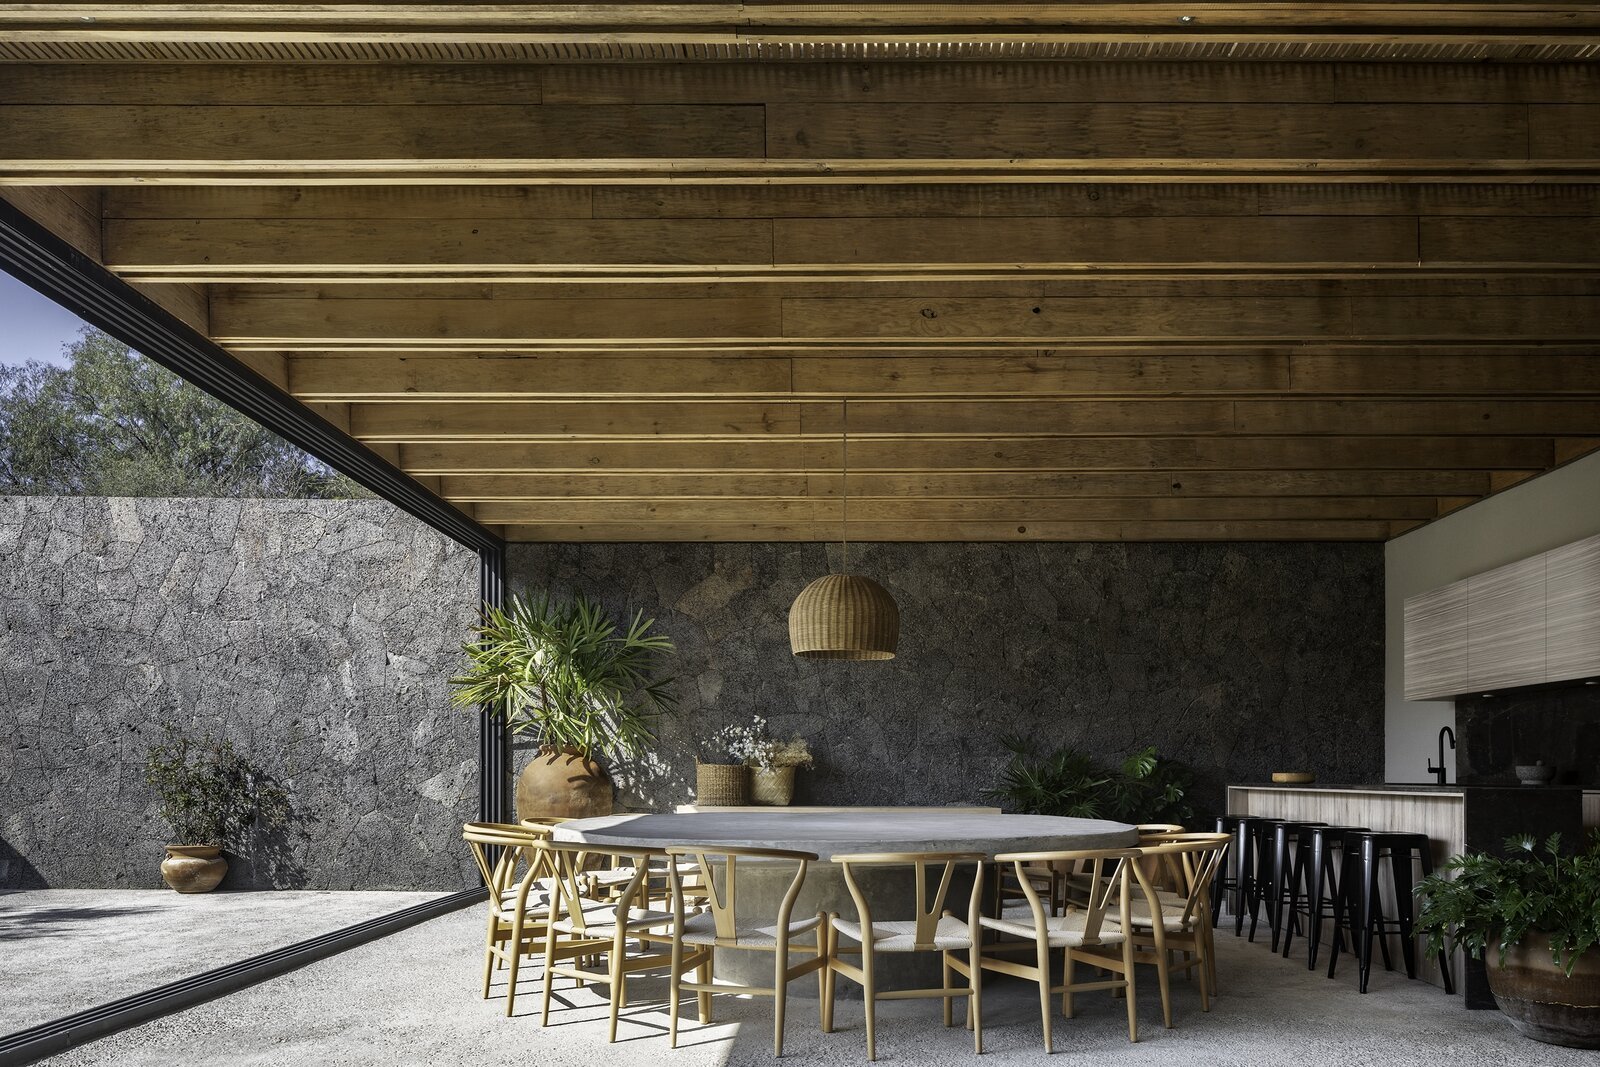 Casa en mexico con techos de madera comedor exterior con mesa redonda